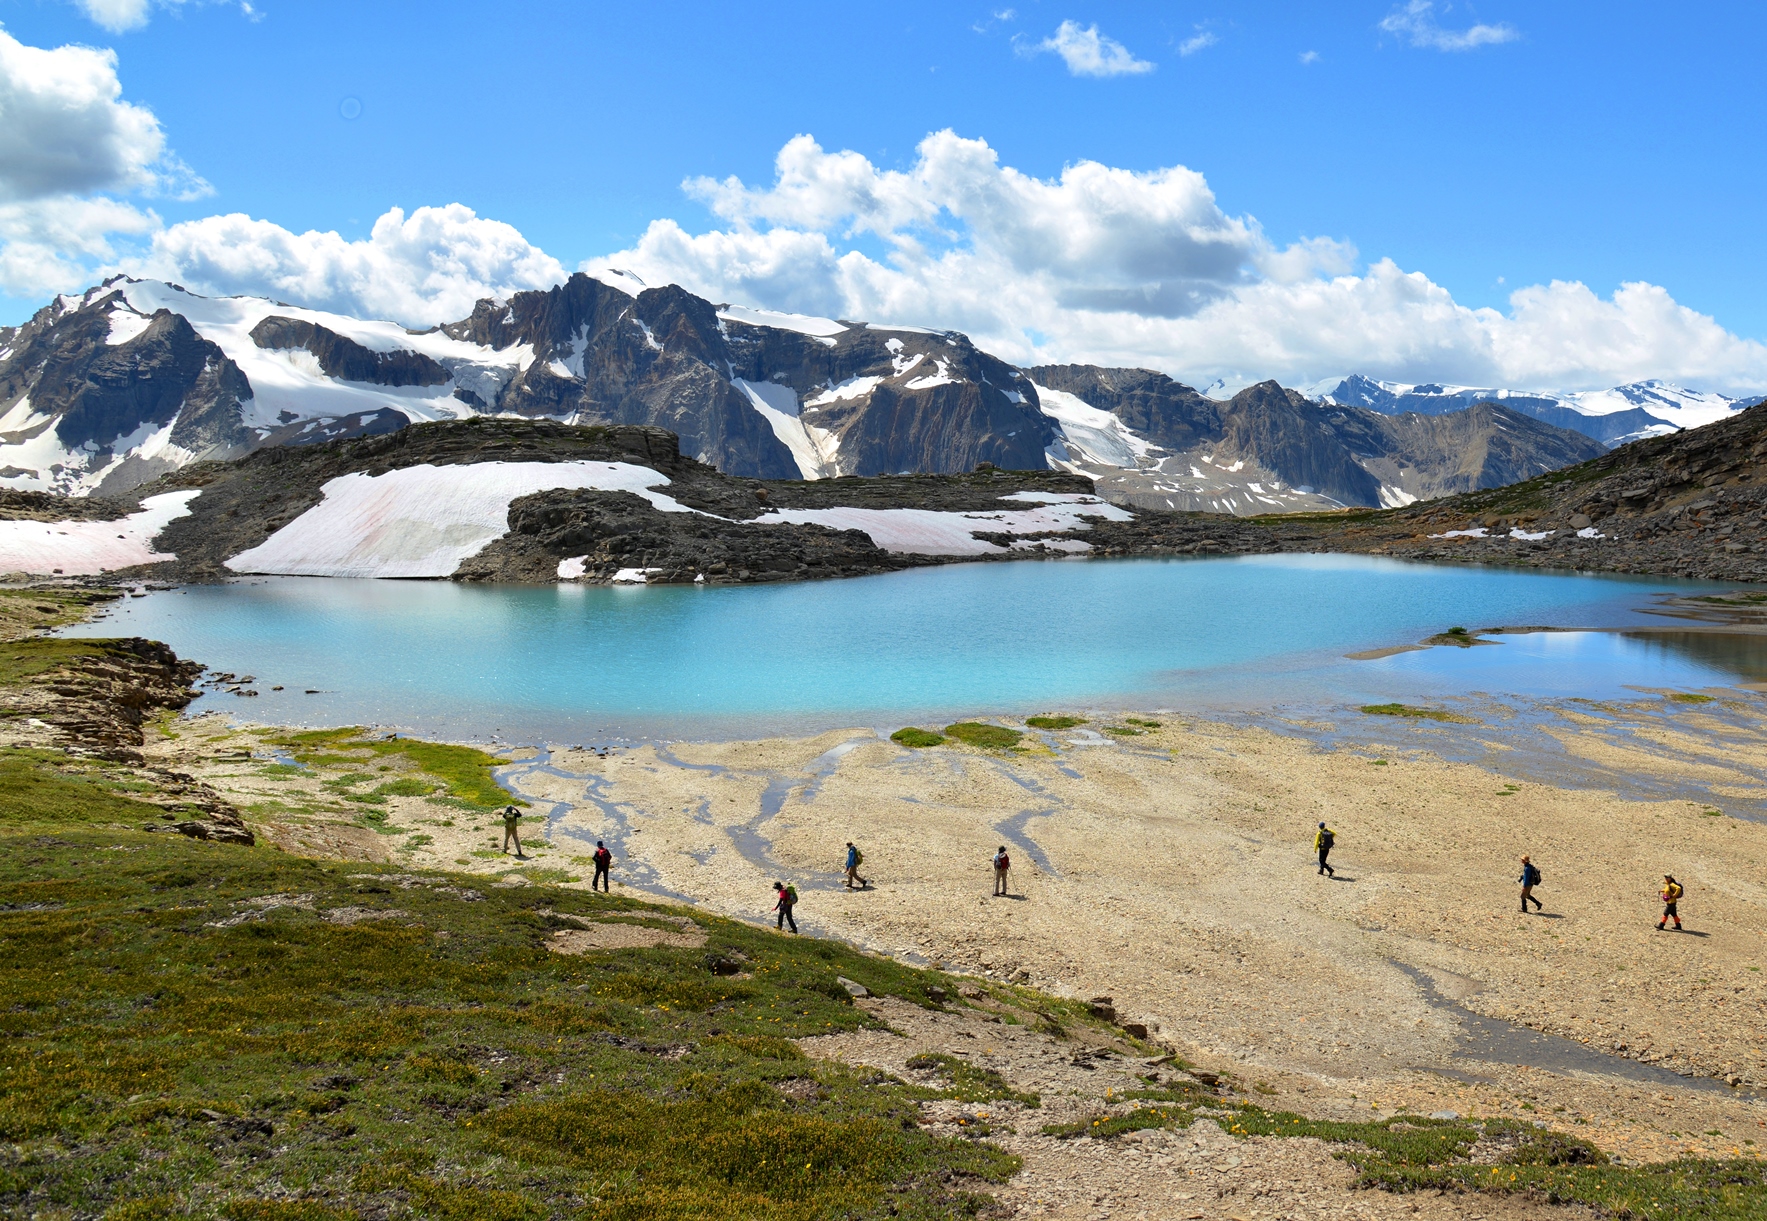 美しい山上湖が点在するエリアを周回するおすすめハイキングコース